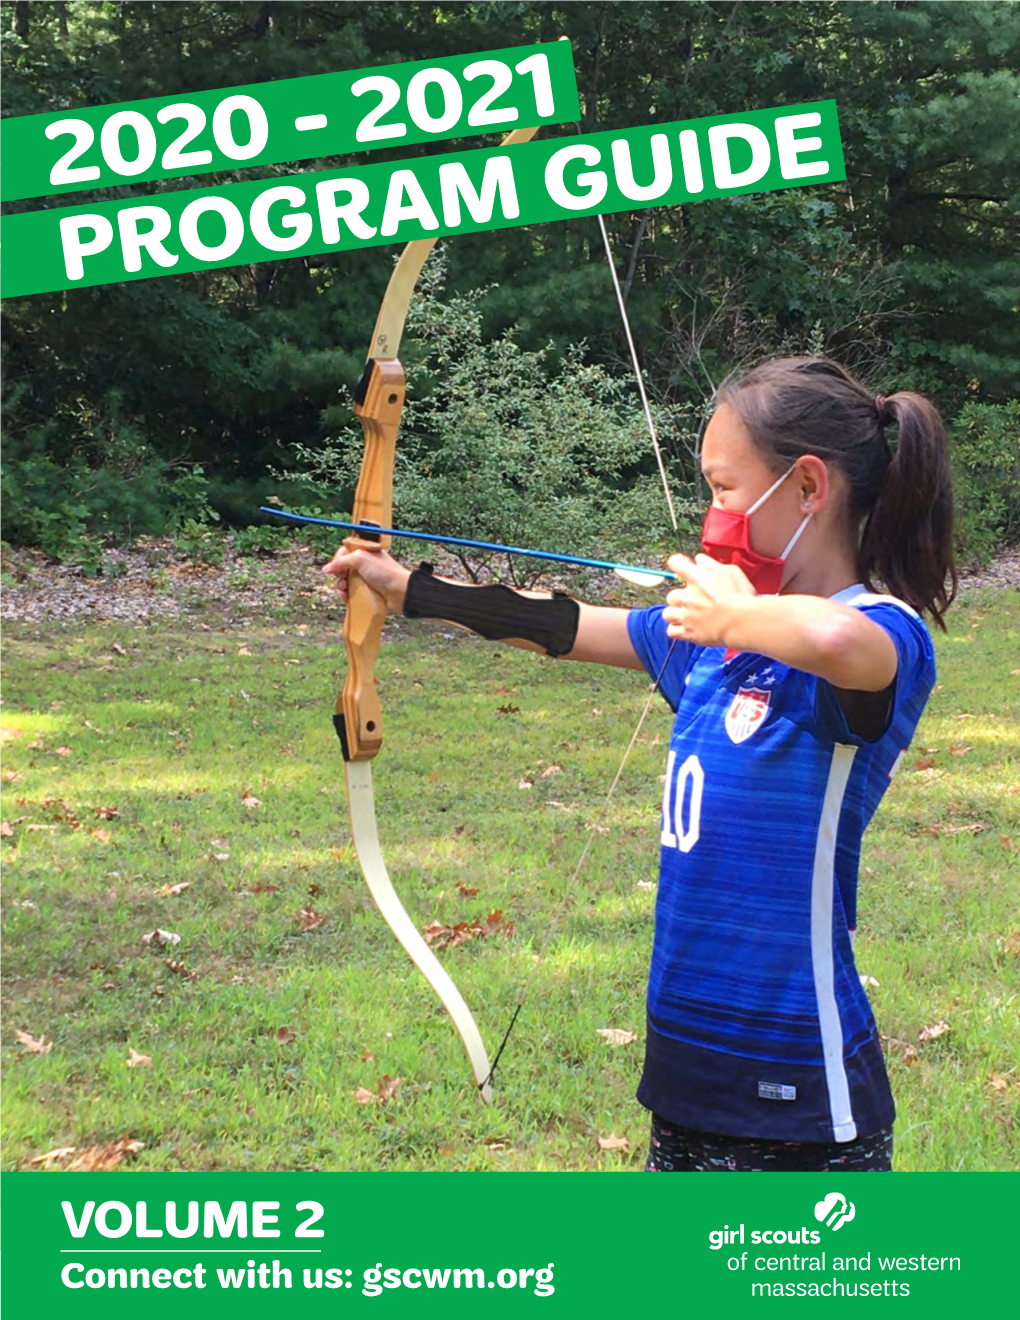 2020 - 2021 Program Guide